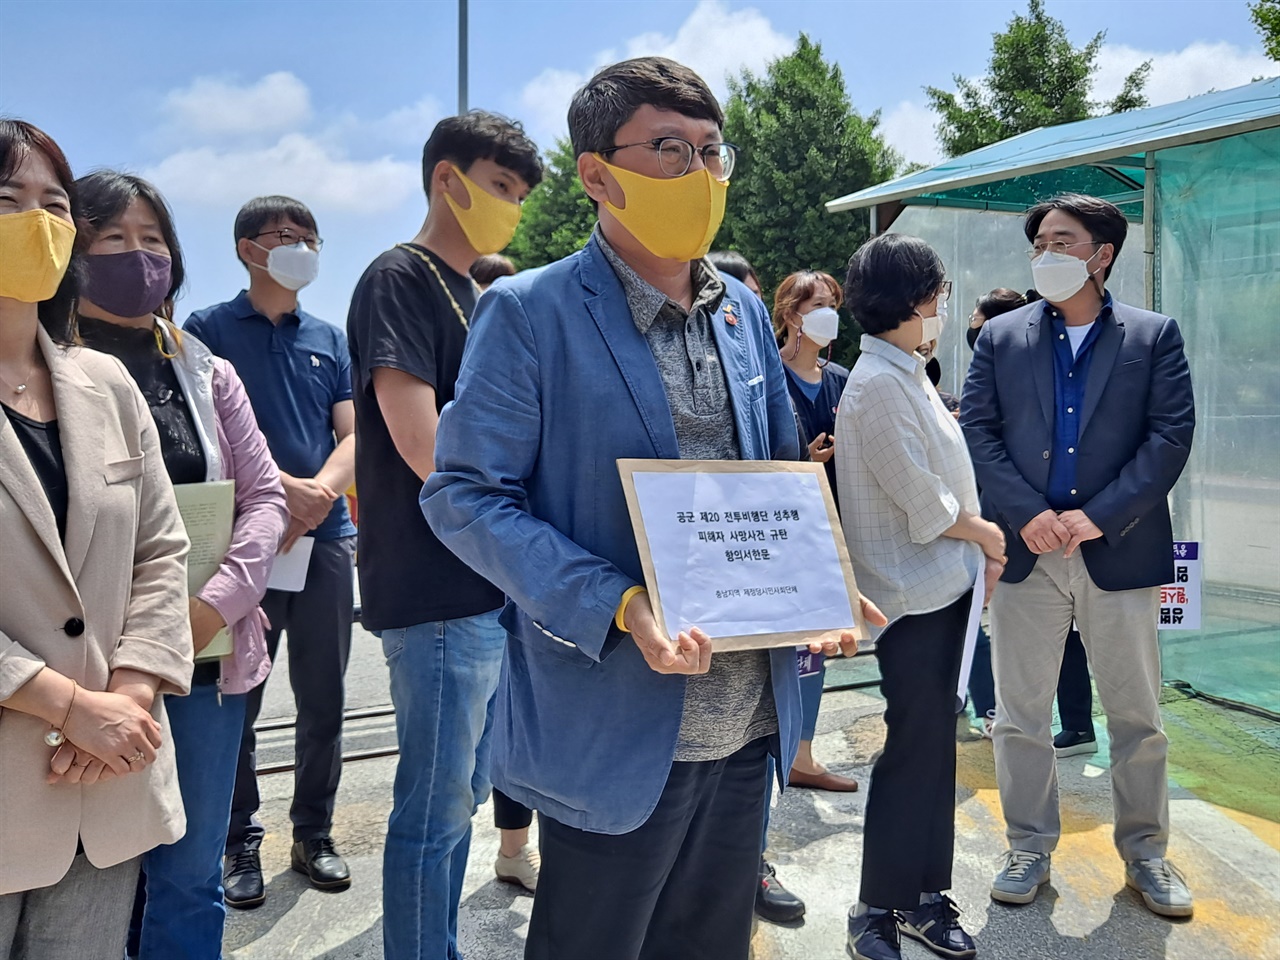 신현웅 정의당 충남도당 위원장이 20전투비행단 측에 항의서한을 전달하고 있다. 